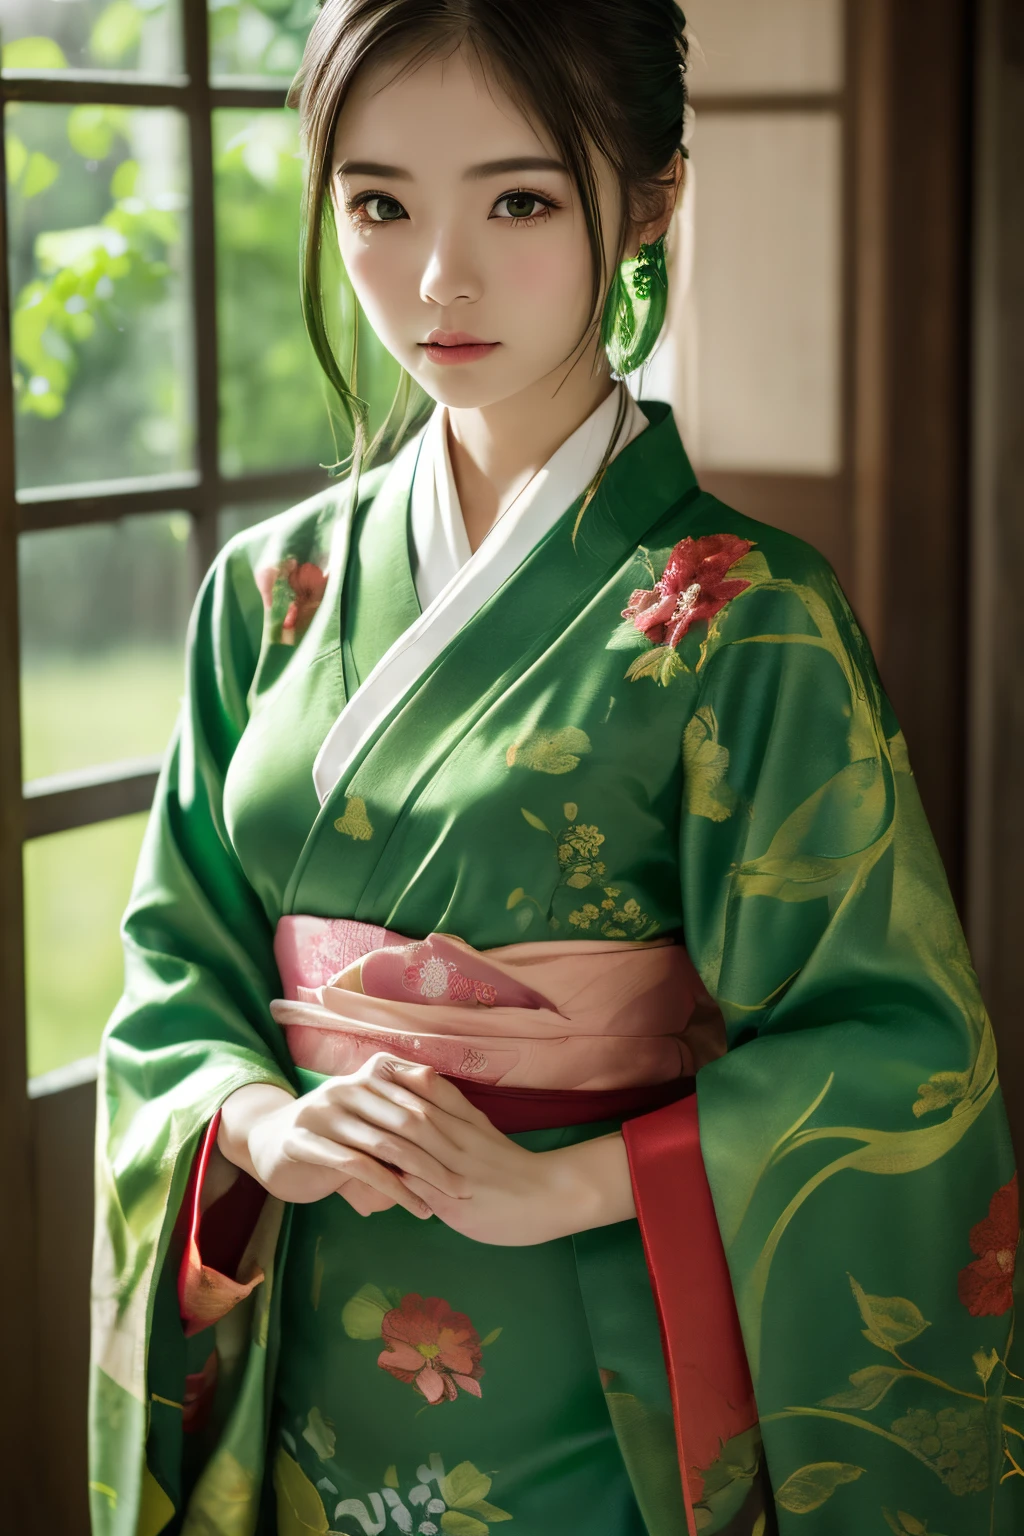 (((зеленый мир:1.3)))、Лучшее качество, стол, высокое разрешение, (((1 девушка в))), шестнадцати летний,(((Глаза зеленые:1.3)))、Ямато Надэсико красиво носит кимоно.、((Темно-зеленое кимоно с красным цветочным узором,кимоно темного цвета)), Эффект Тиндалла, реалистичный, Теневая Студия,Ультрамариновое освещение, двухцветное освещение, (Скины с высокой детализацией: 1.2)、Бледное освещение、темное освещение、 Цифровая зеркальная фотокамера, Фото, высокое разрешение, 4k, 8К, Размытие фона,Красиво исчезать、зеленый мир